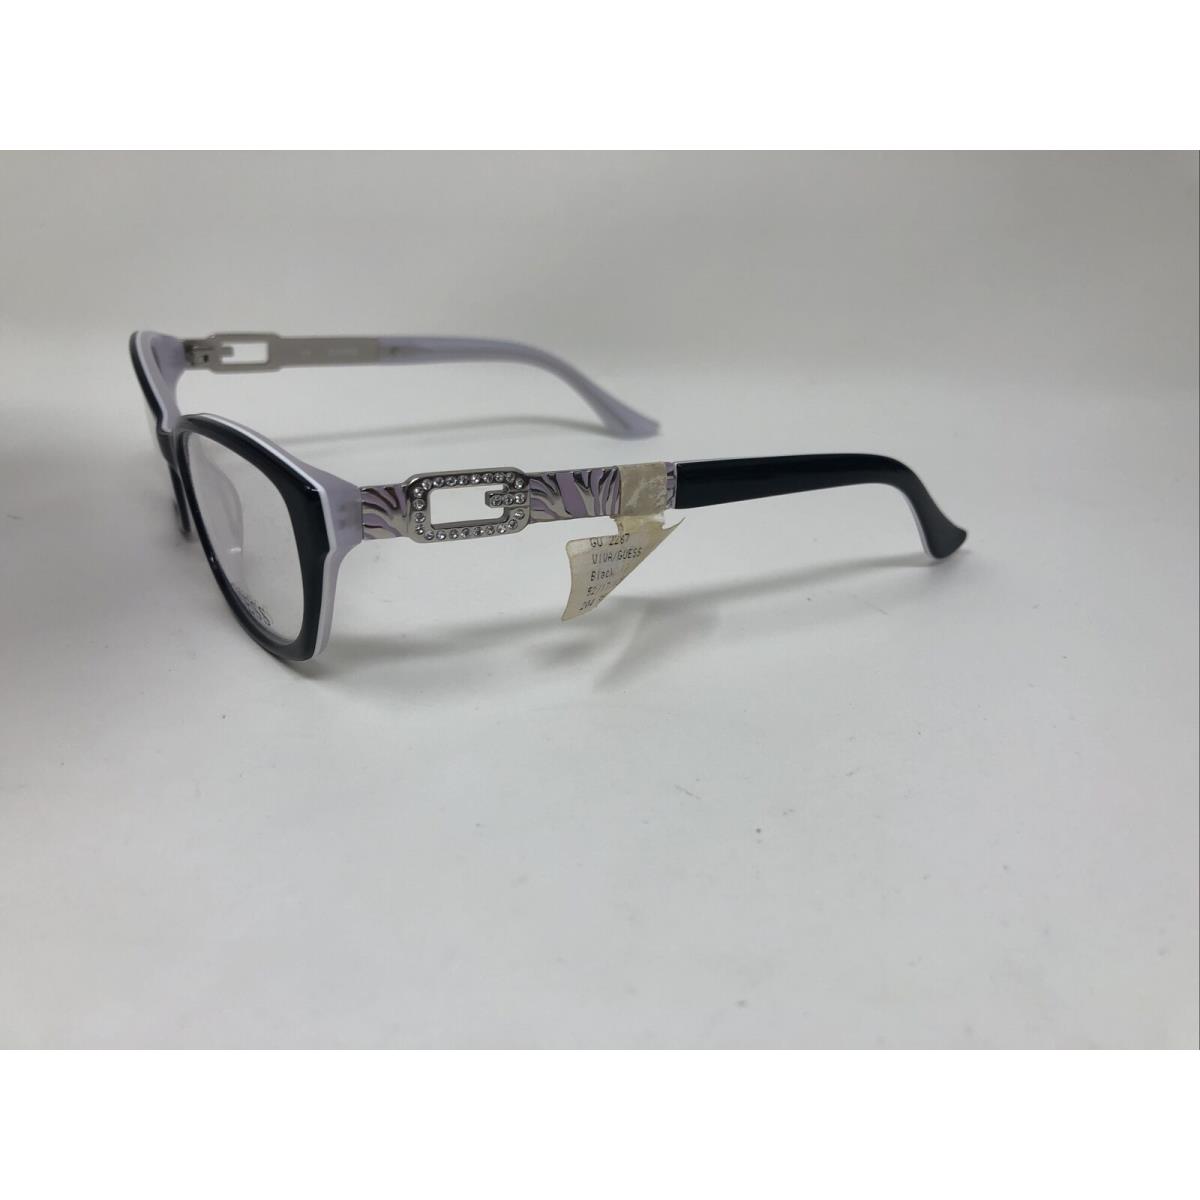 Guess eyeglasses BLK - Black Frame 0